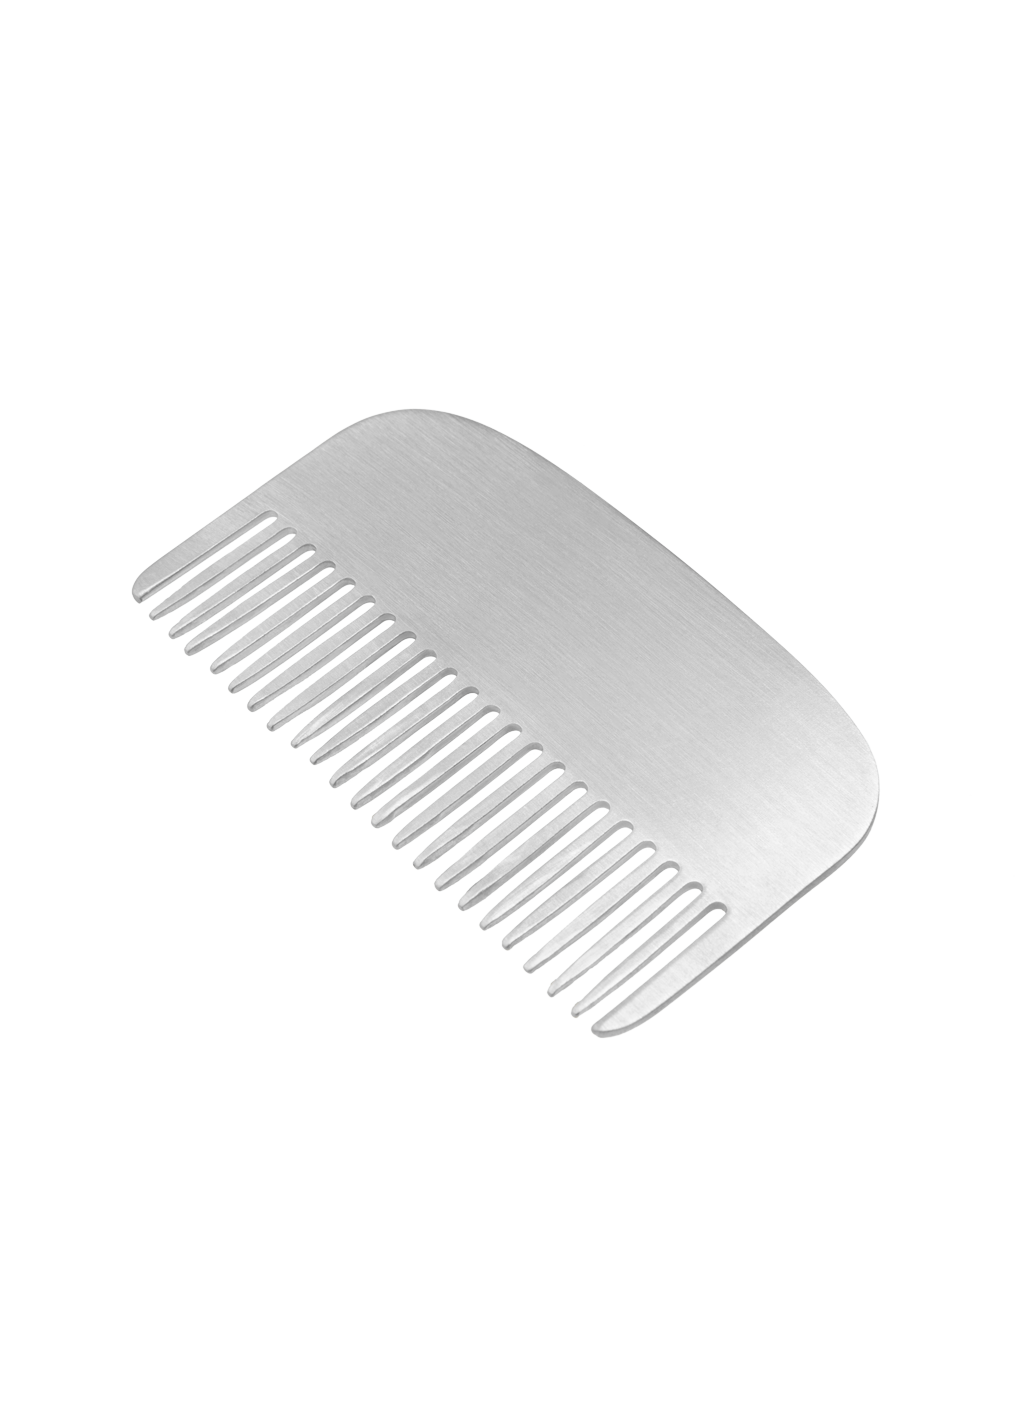 the combing comb en argent